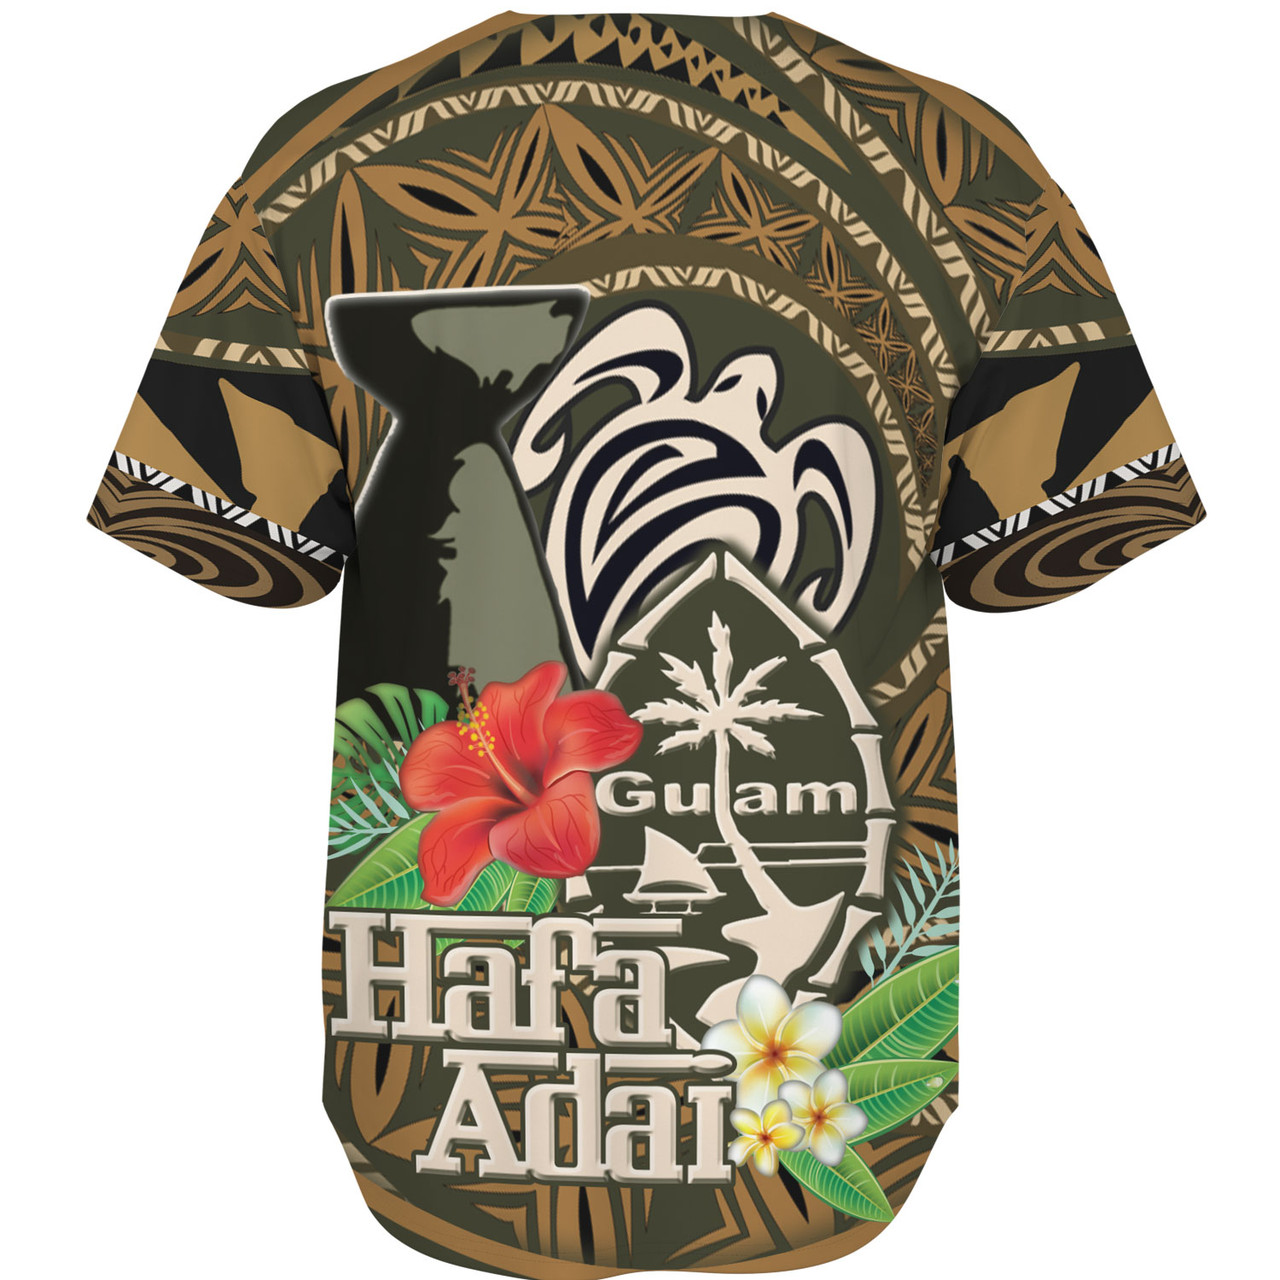 Guam Custom Personalised Baseball Shirt Hafa Adai Seal Flower Tropical Retro Style